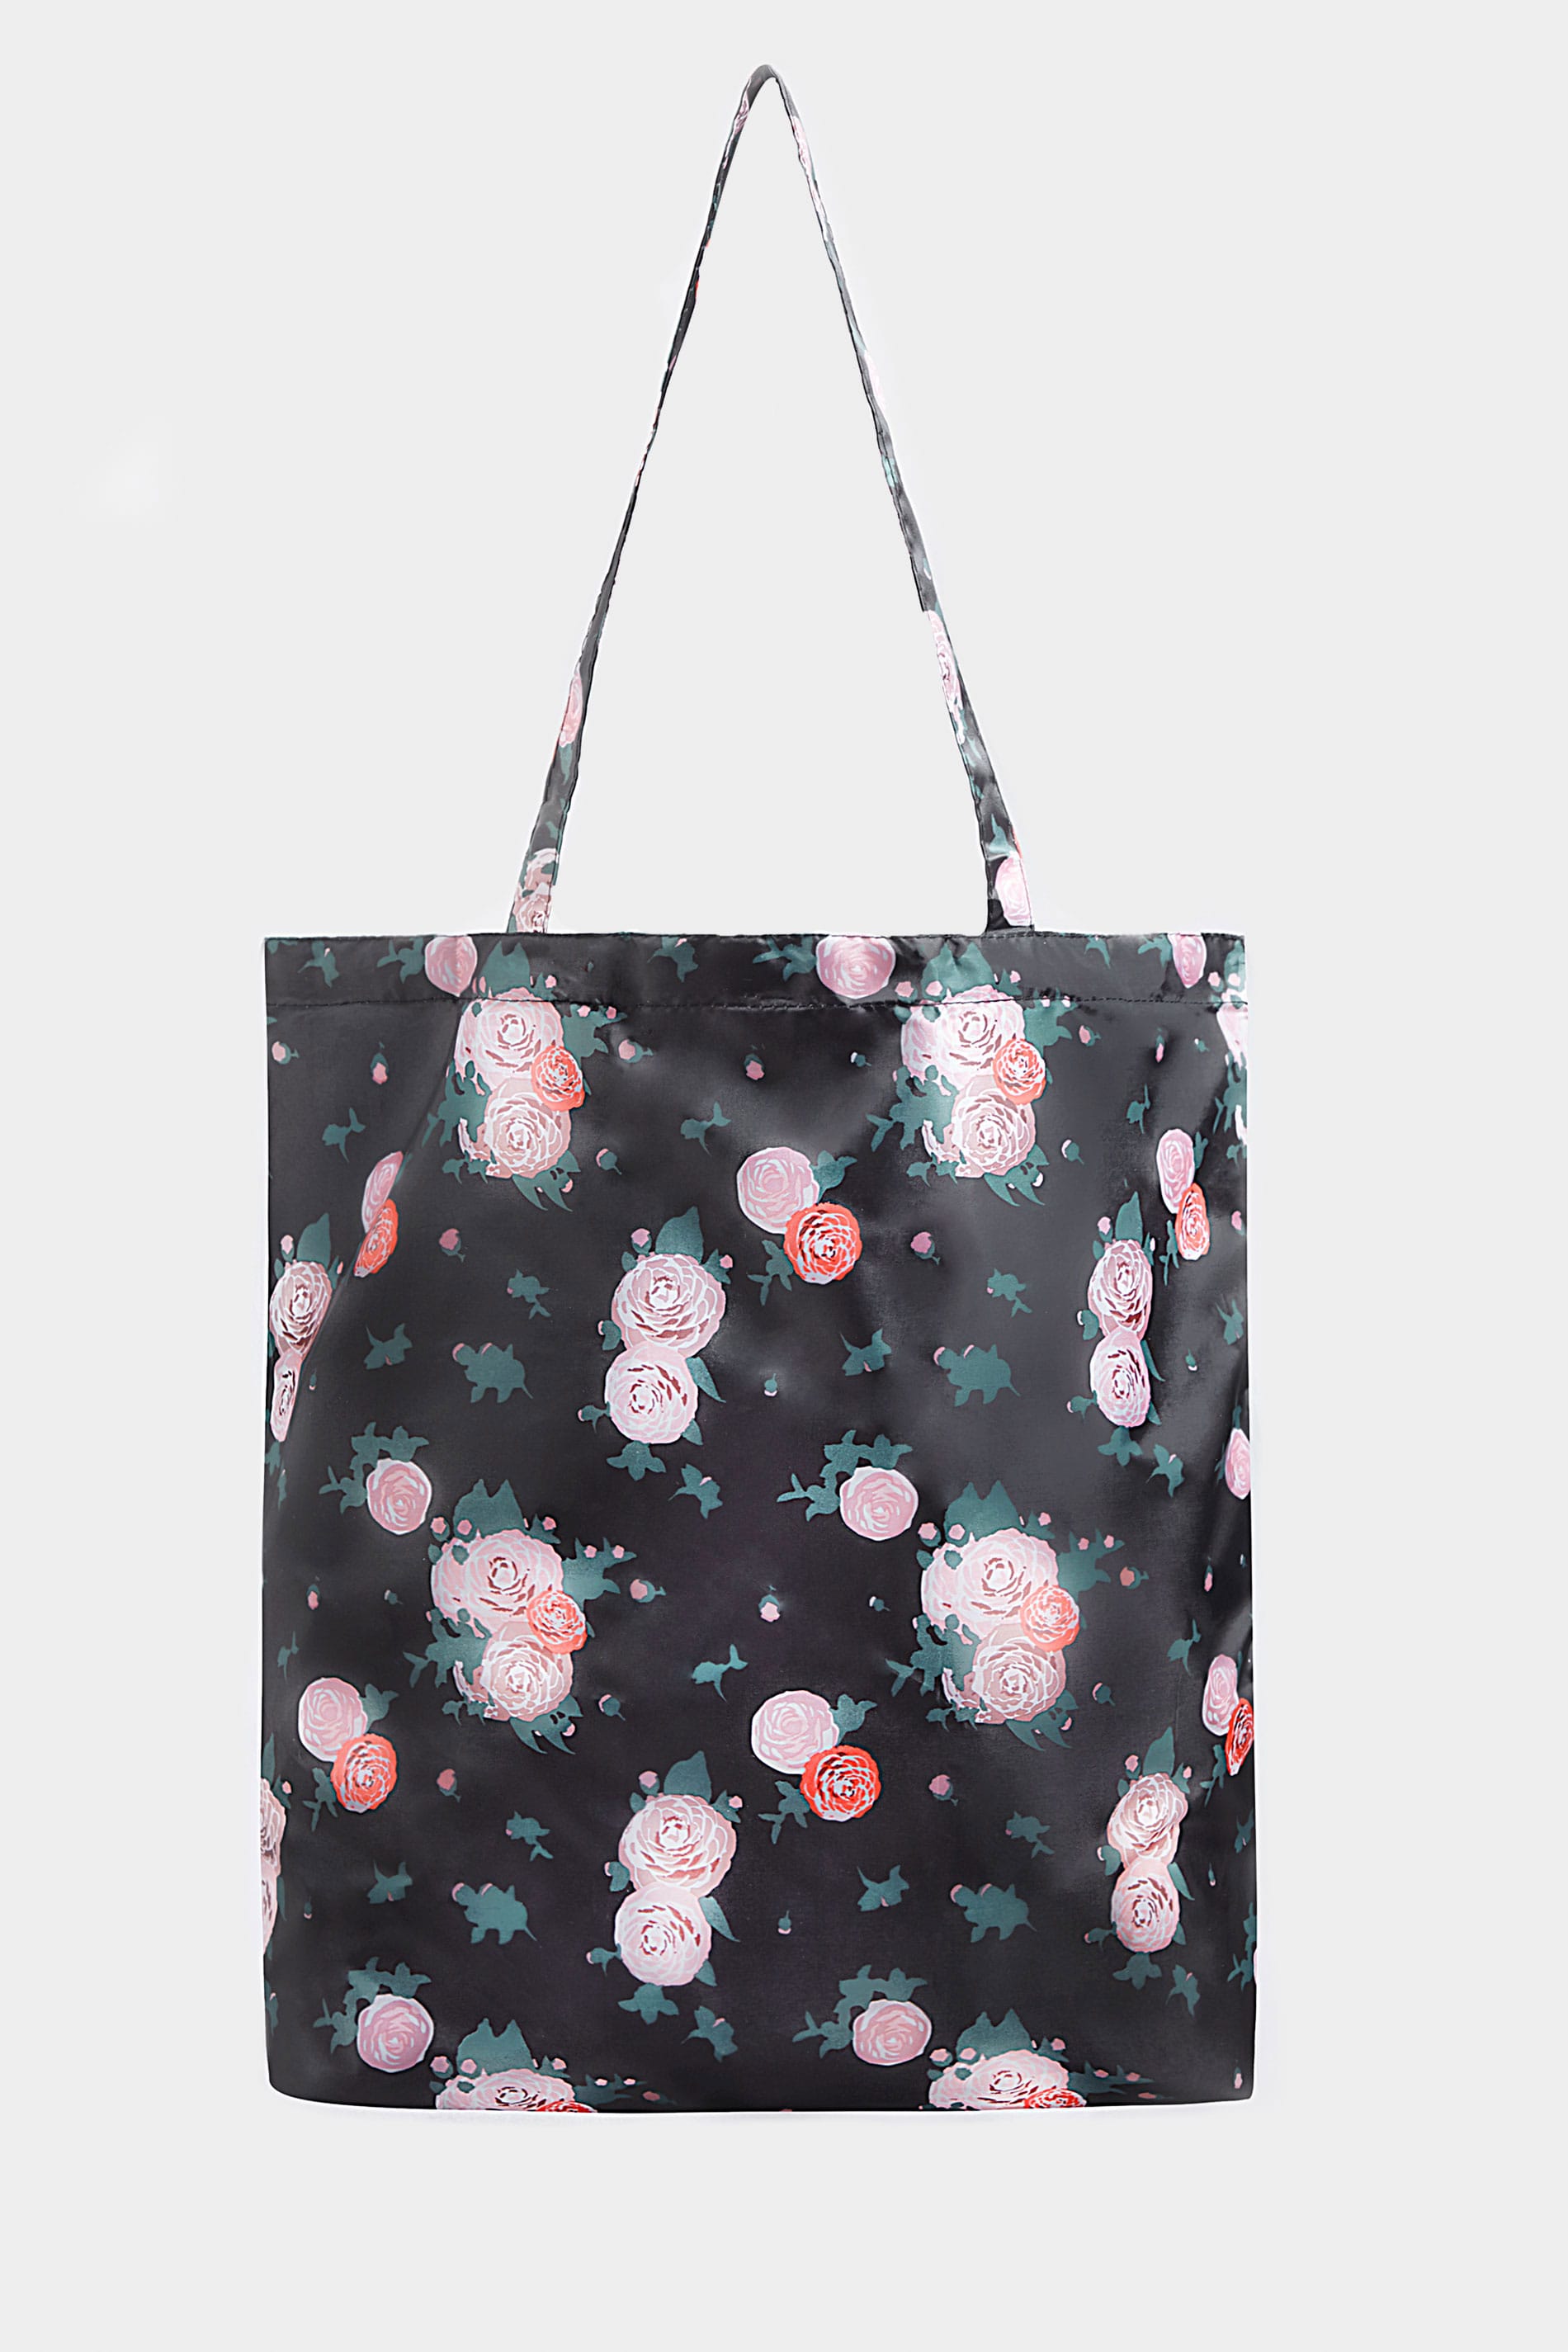 Yours Clothing Black floral fold up shopper bag